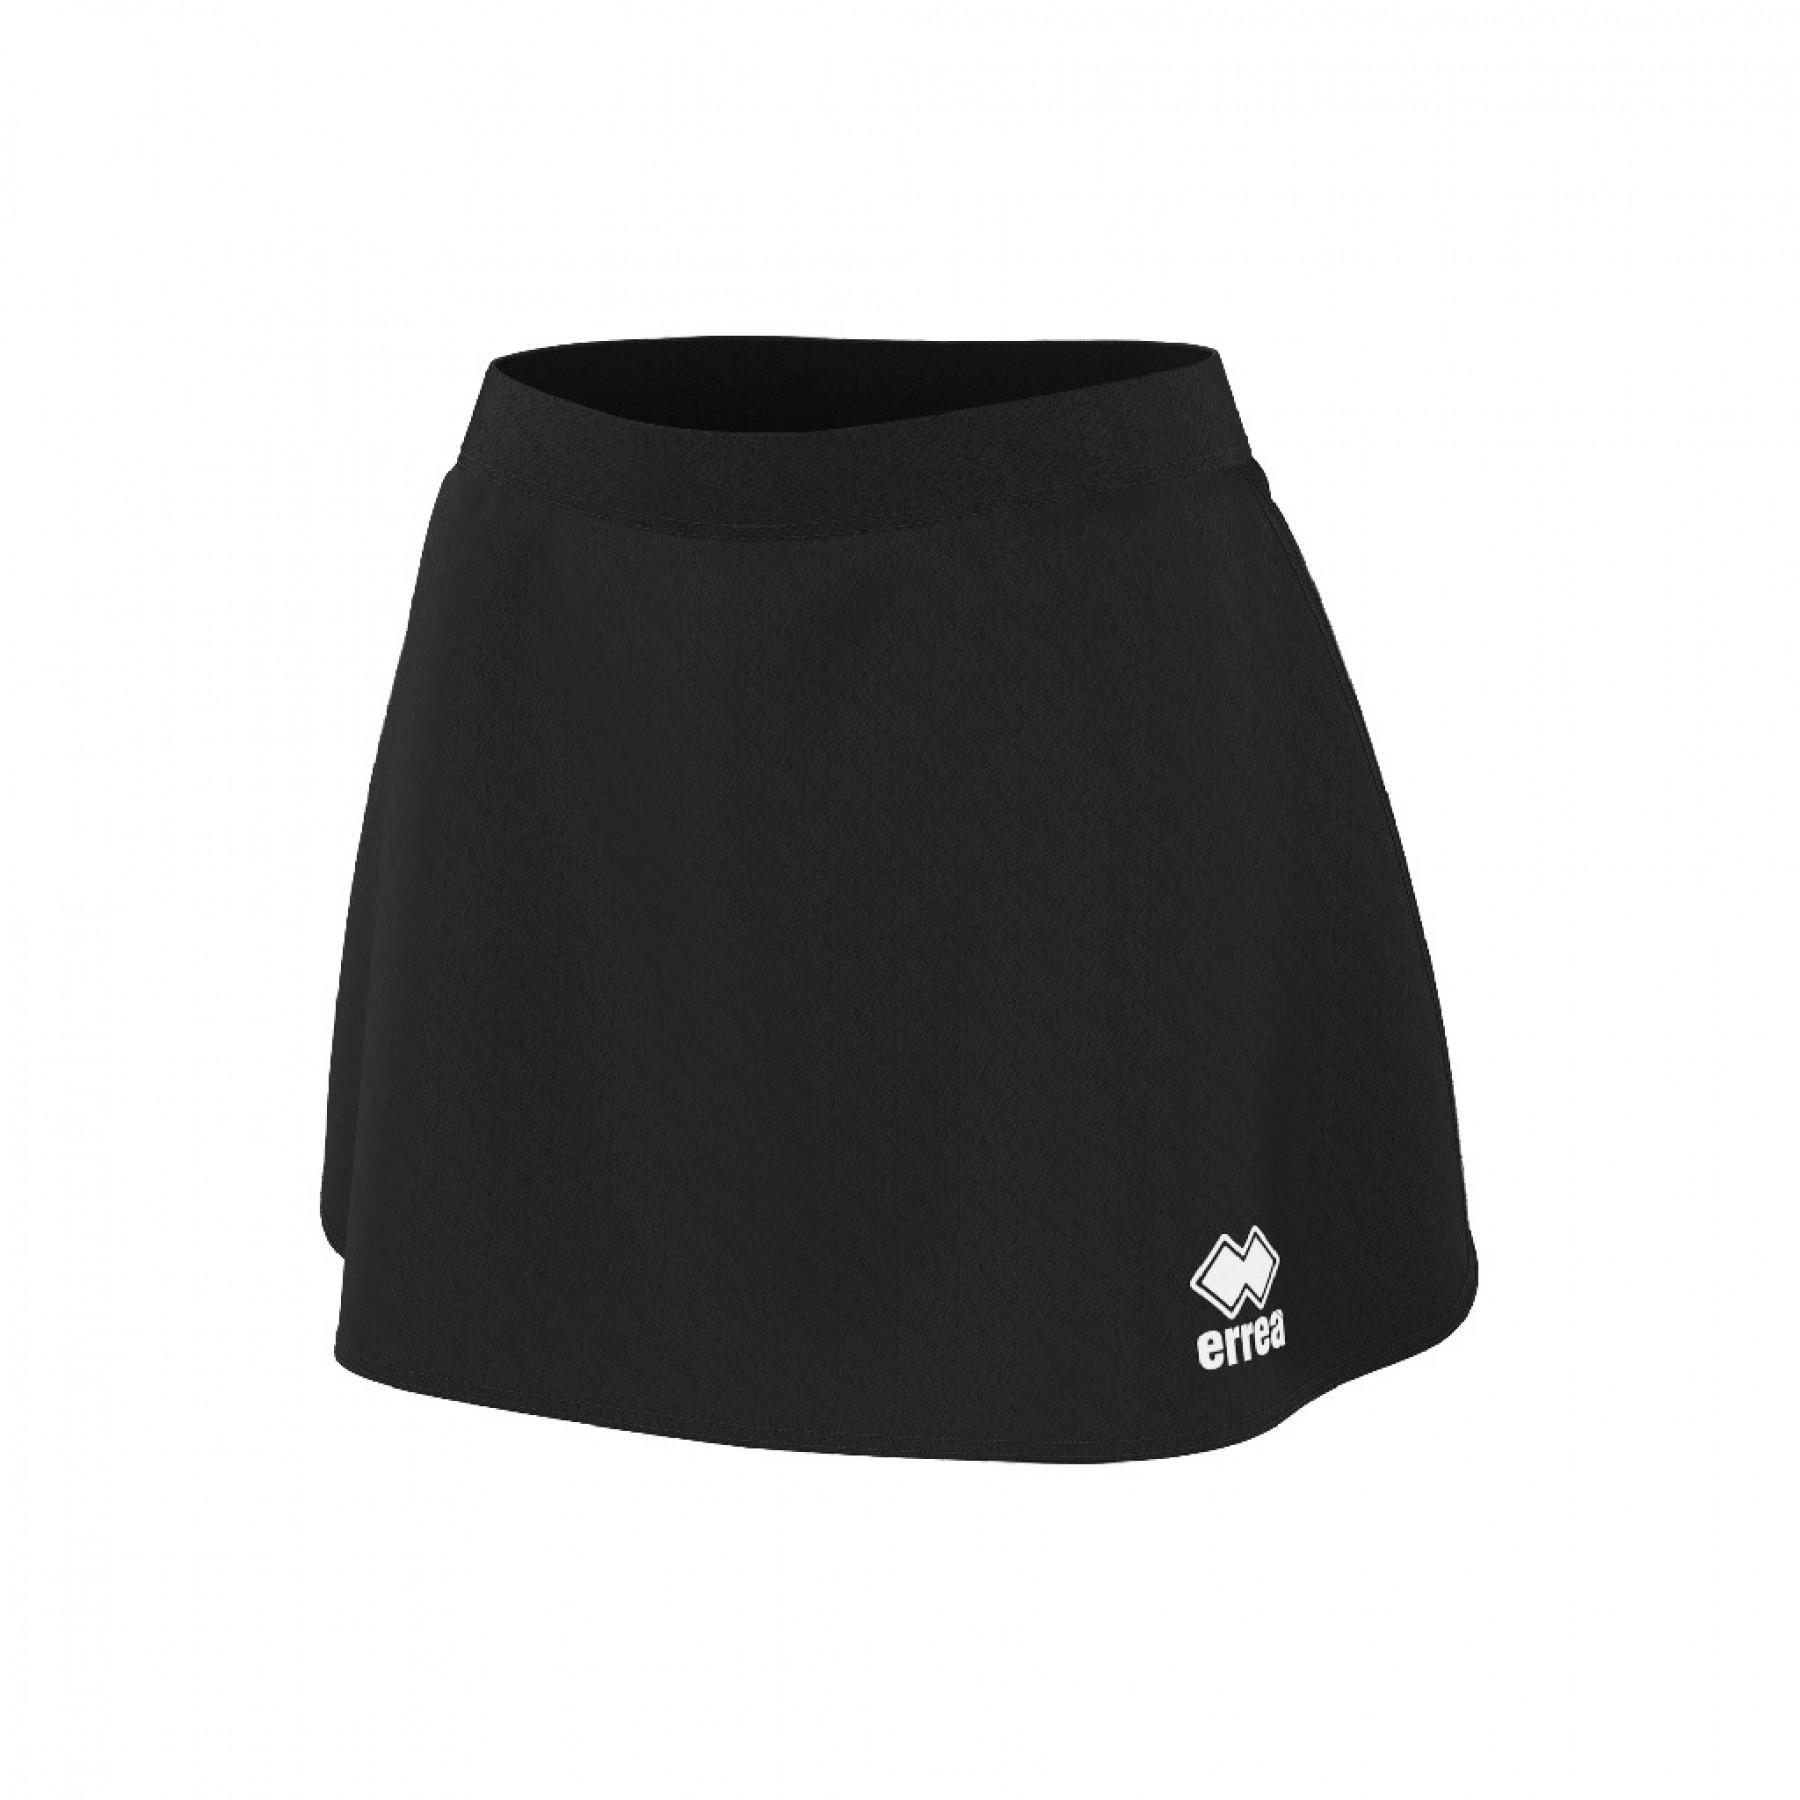 Women's shorts Errea 3.0 minigonna